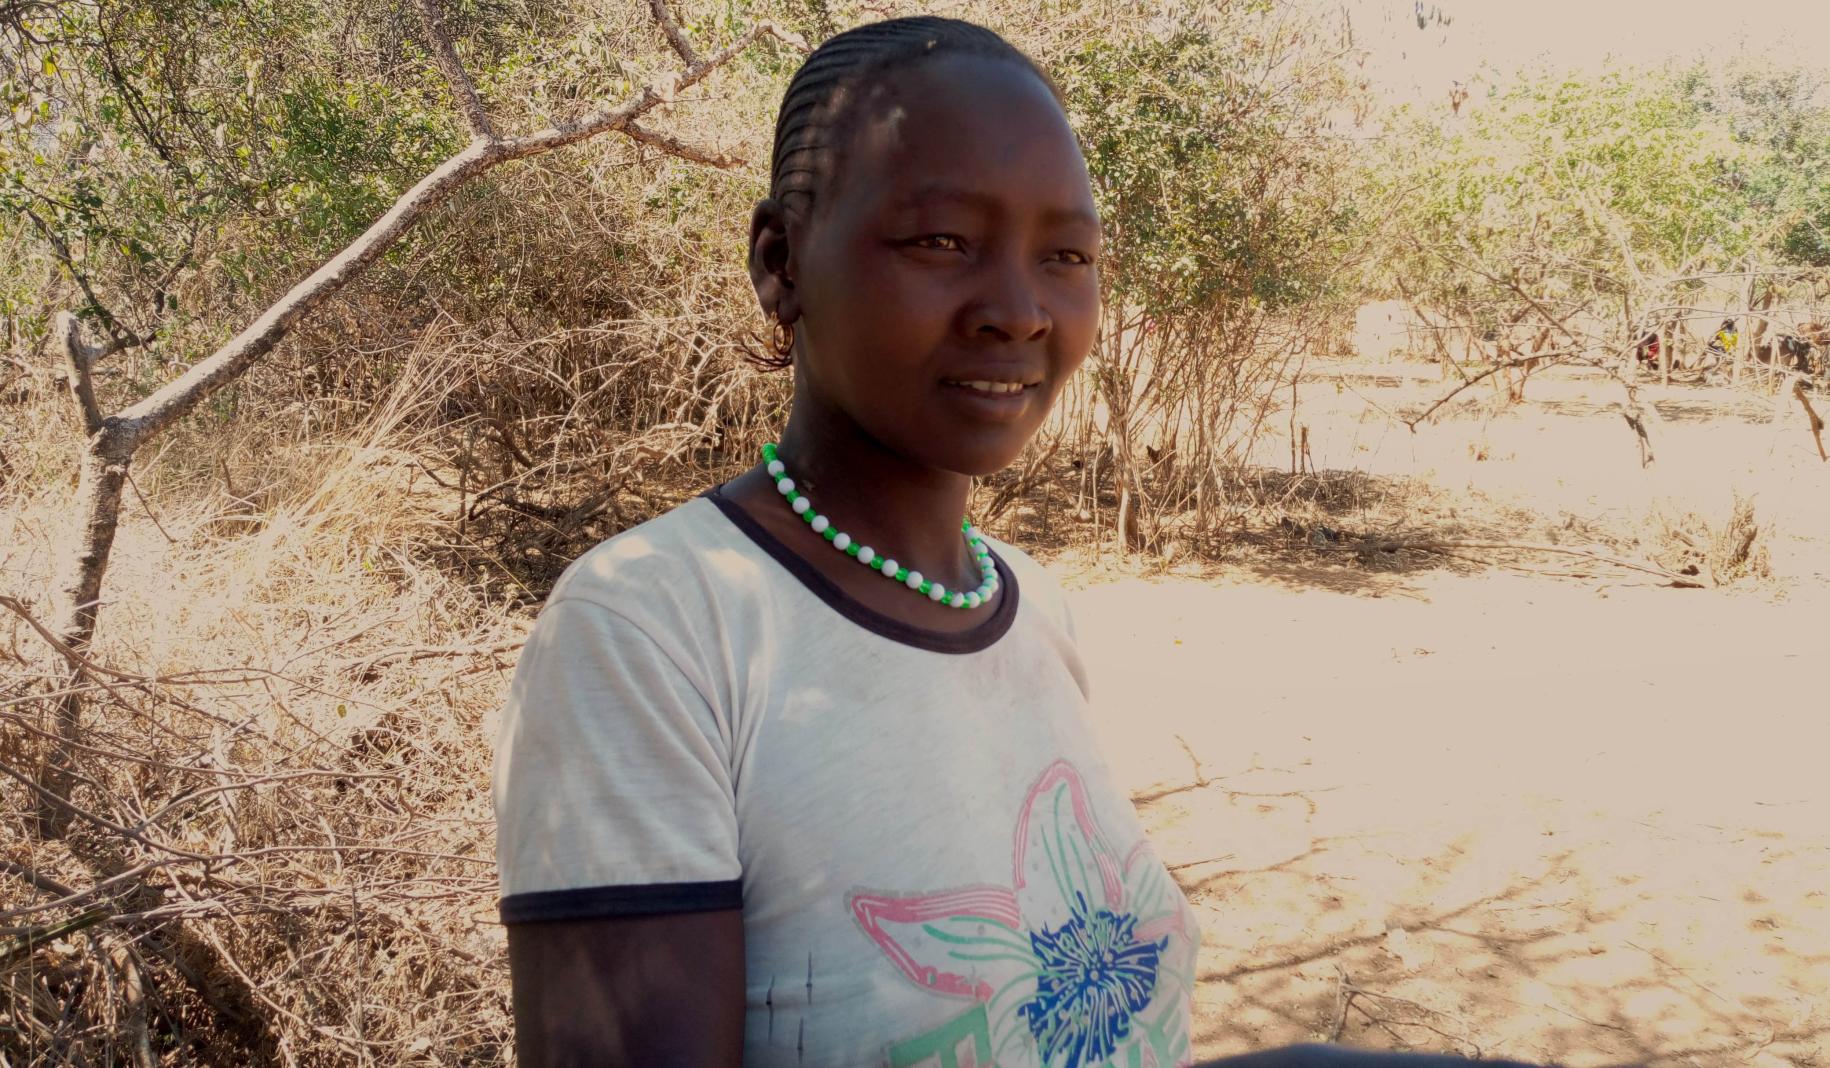 مارغريت تشيبوتيلتل، ناشطة في أوغندا تقف في الخارج بجانب شجرة وهي تحدق بعيدًا من الكاميرا.